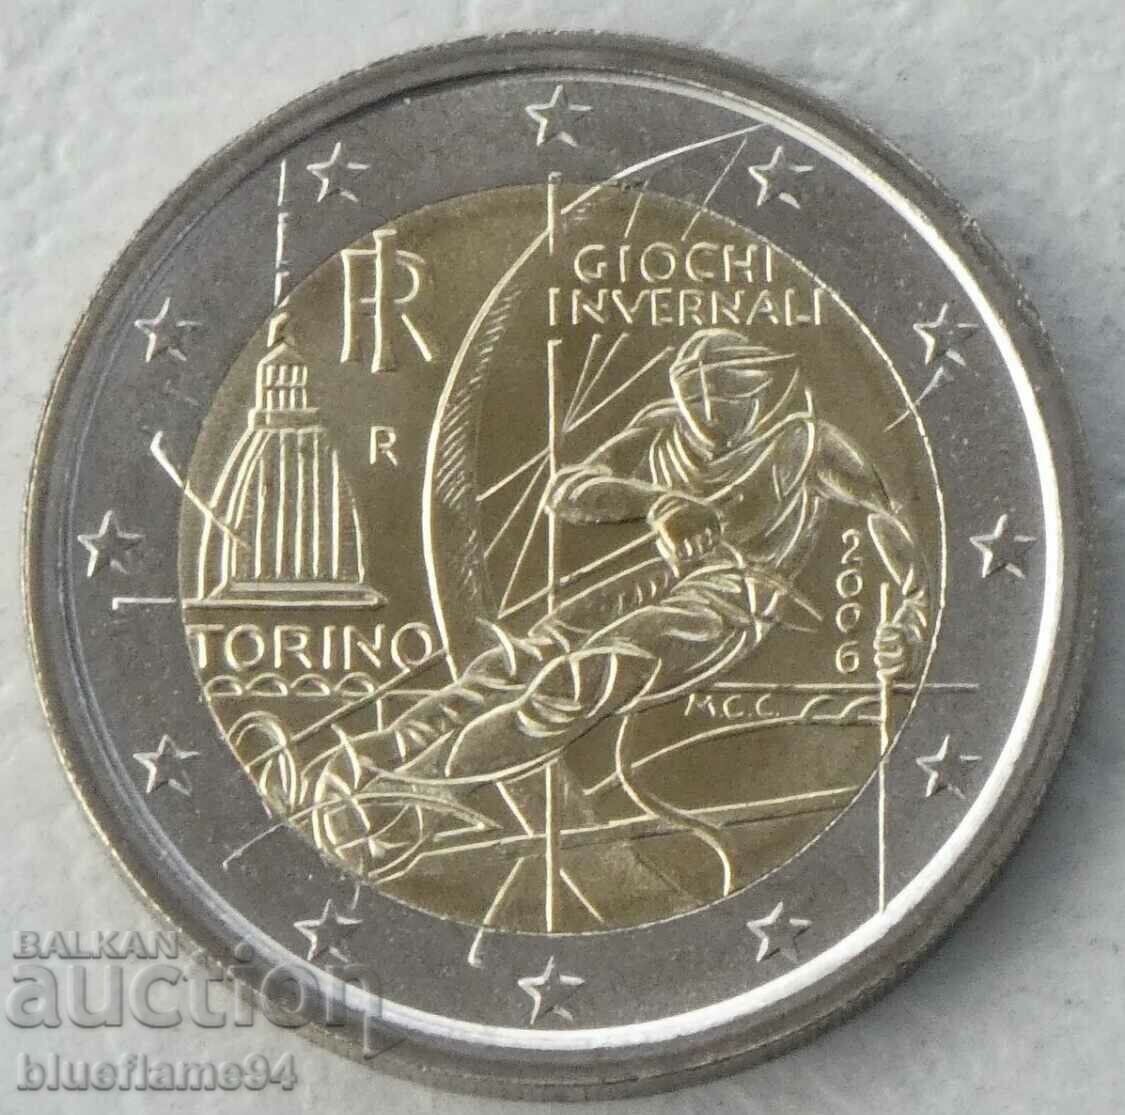 2 ευρώ Ιταλία 2006